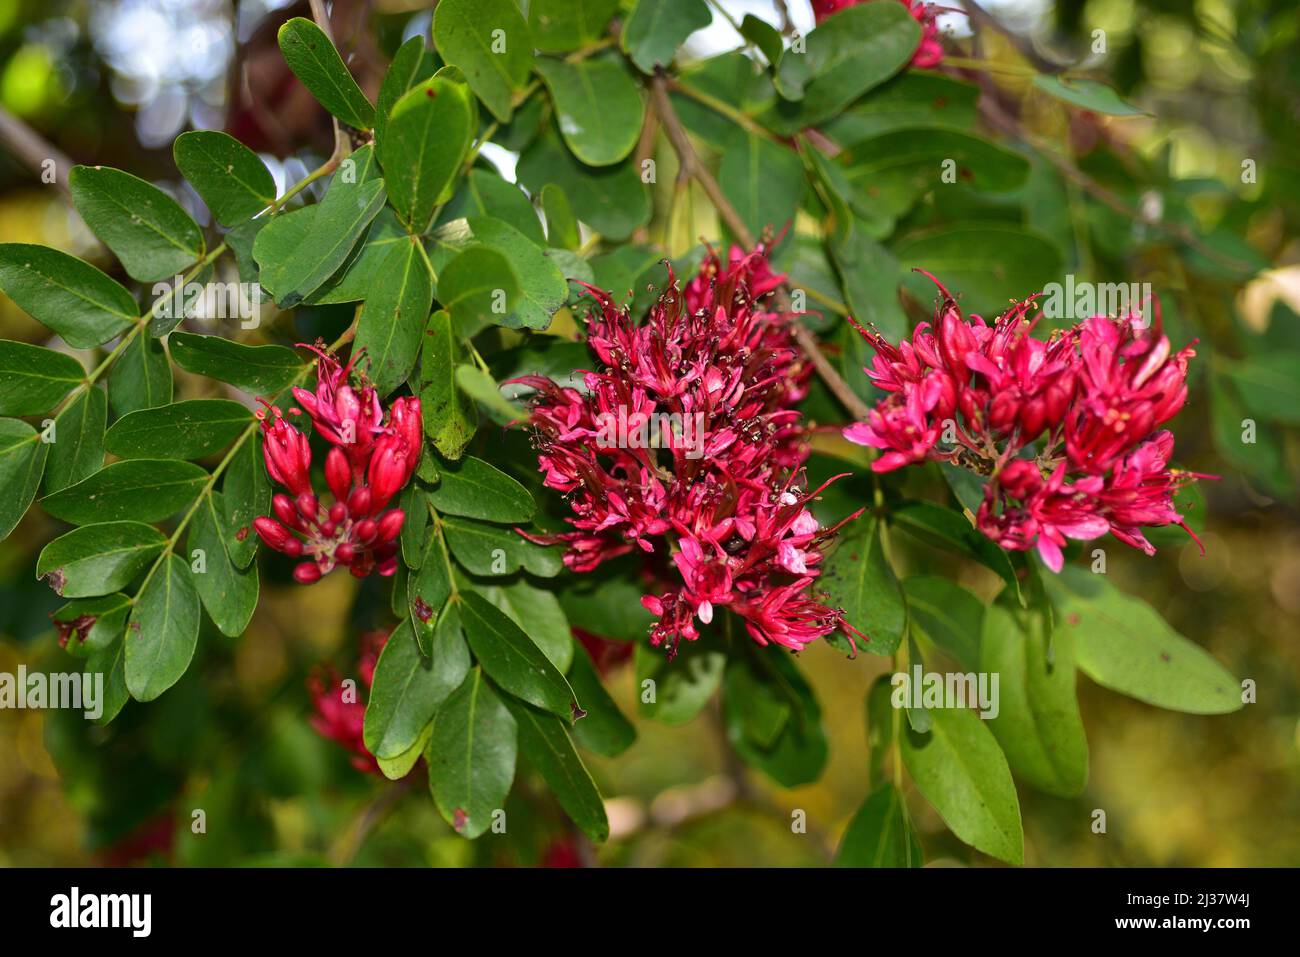 El frijol jaballo (Schotia brachypetala o Schotia latifolia) es un árbol caducifolio nativo del sur de África. Detalle de flores. Foto de stock